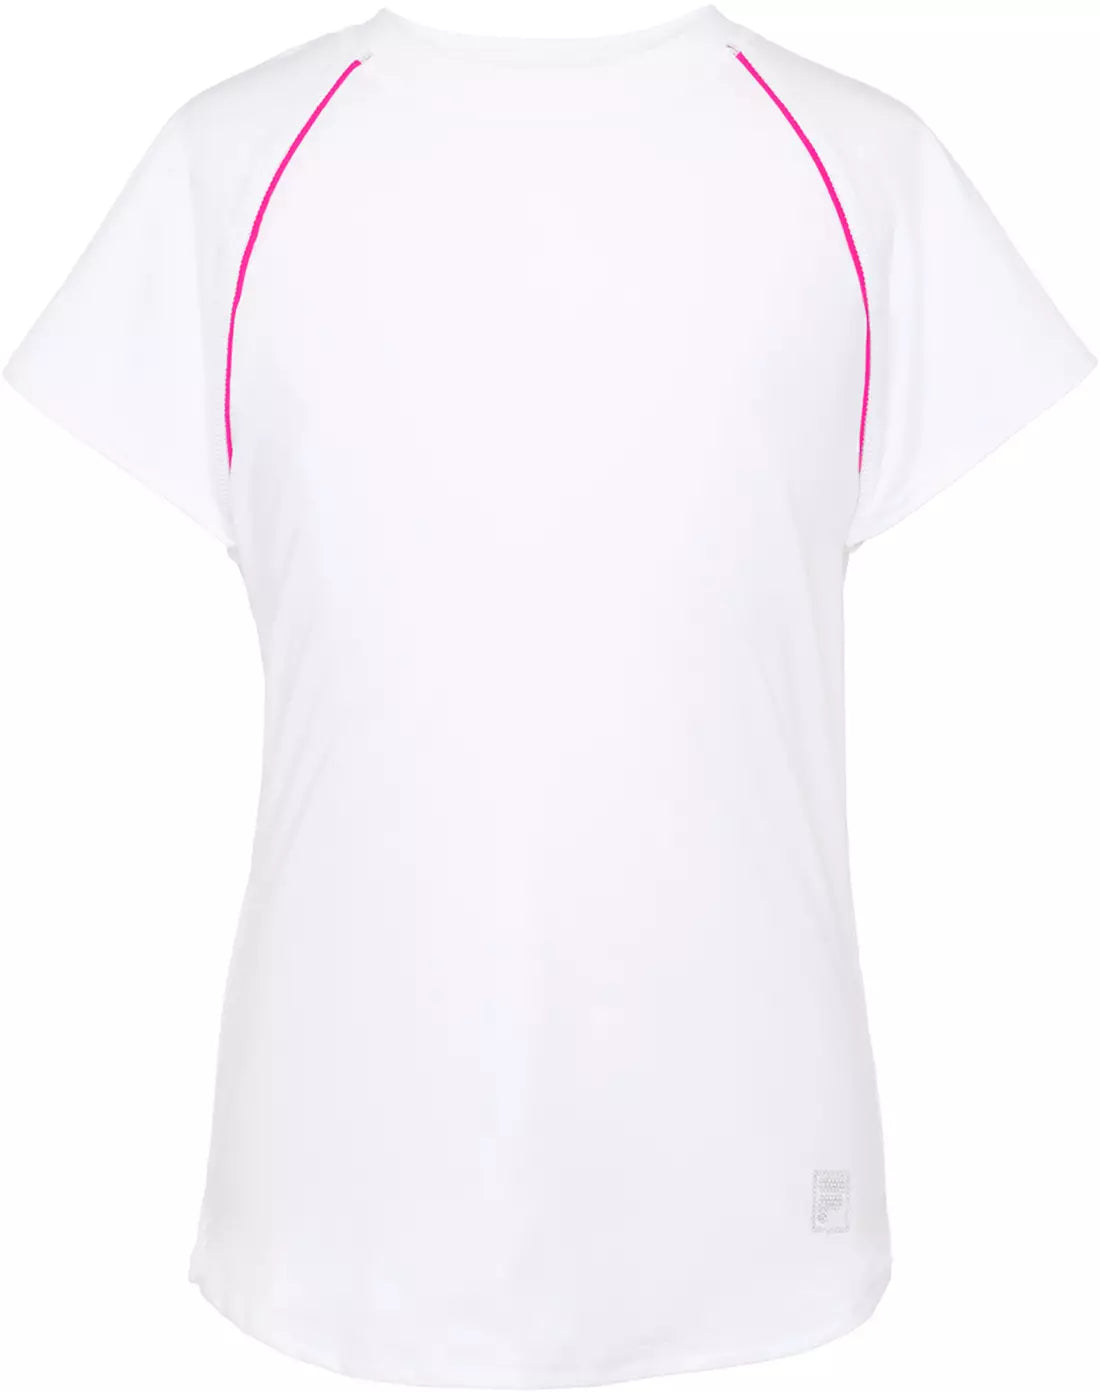 Fila Girls tennis short sleeve top